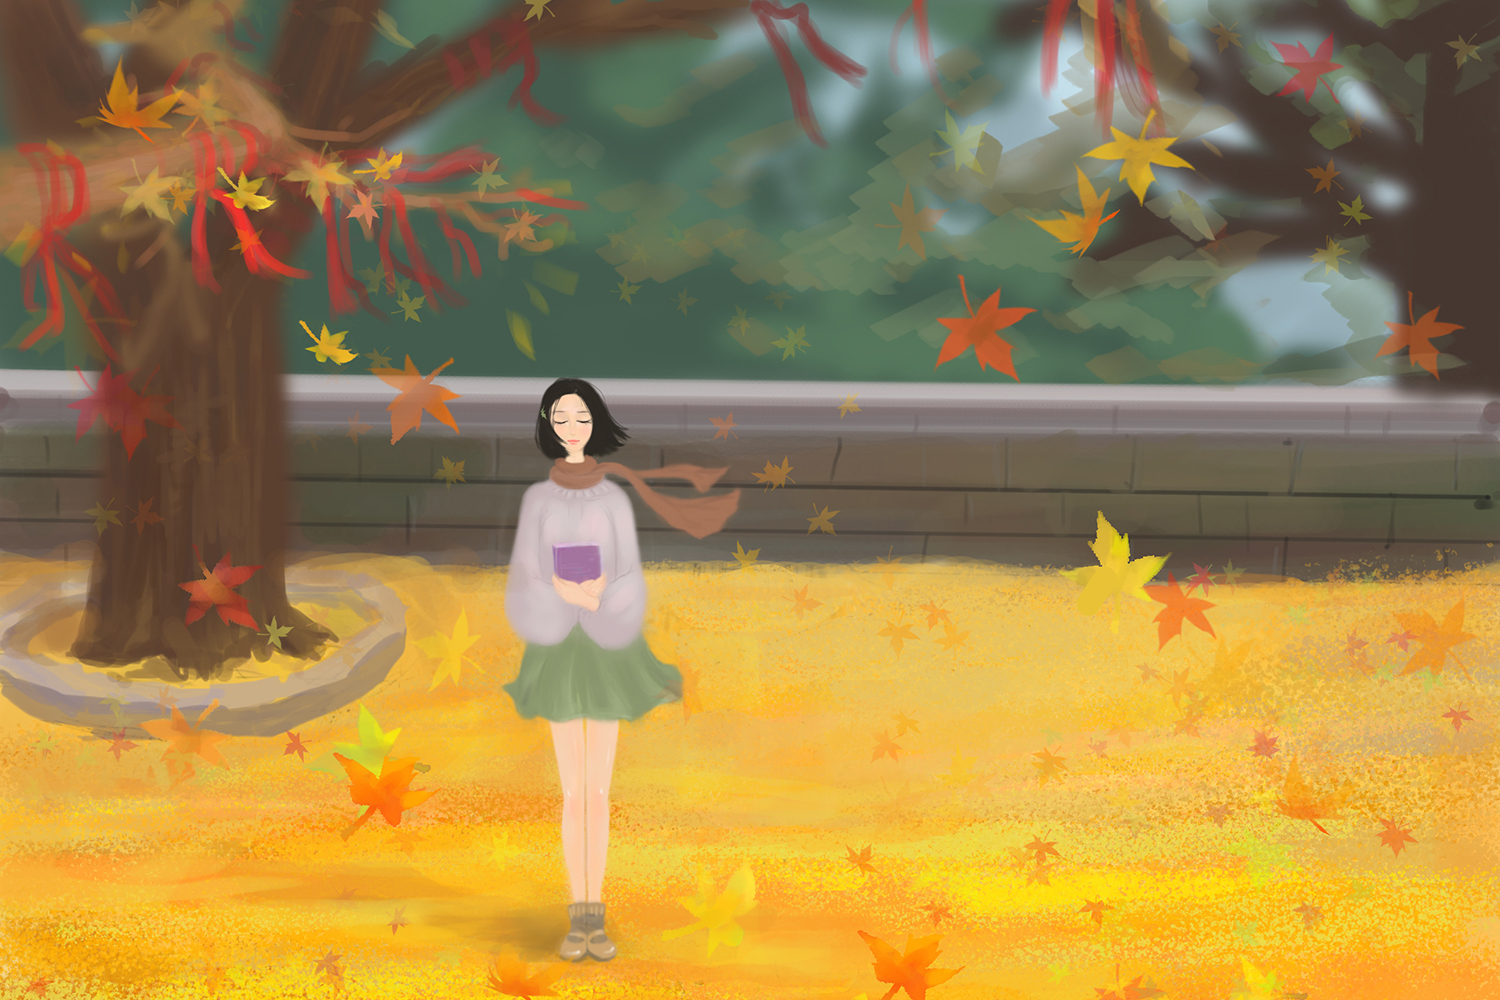 深秋气温渐凉美丽的枫树红叶图片壁纸【8】 - 摄影 - 亿图全景图库